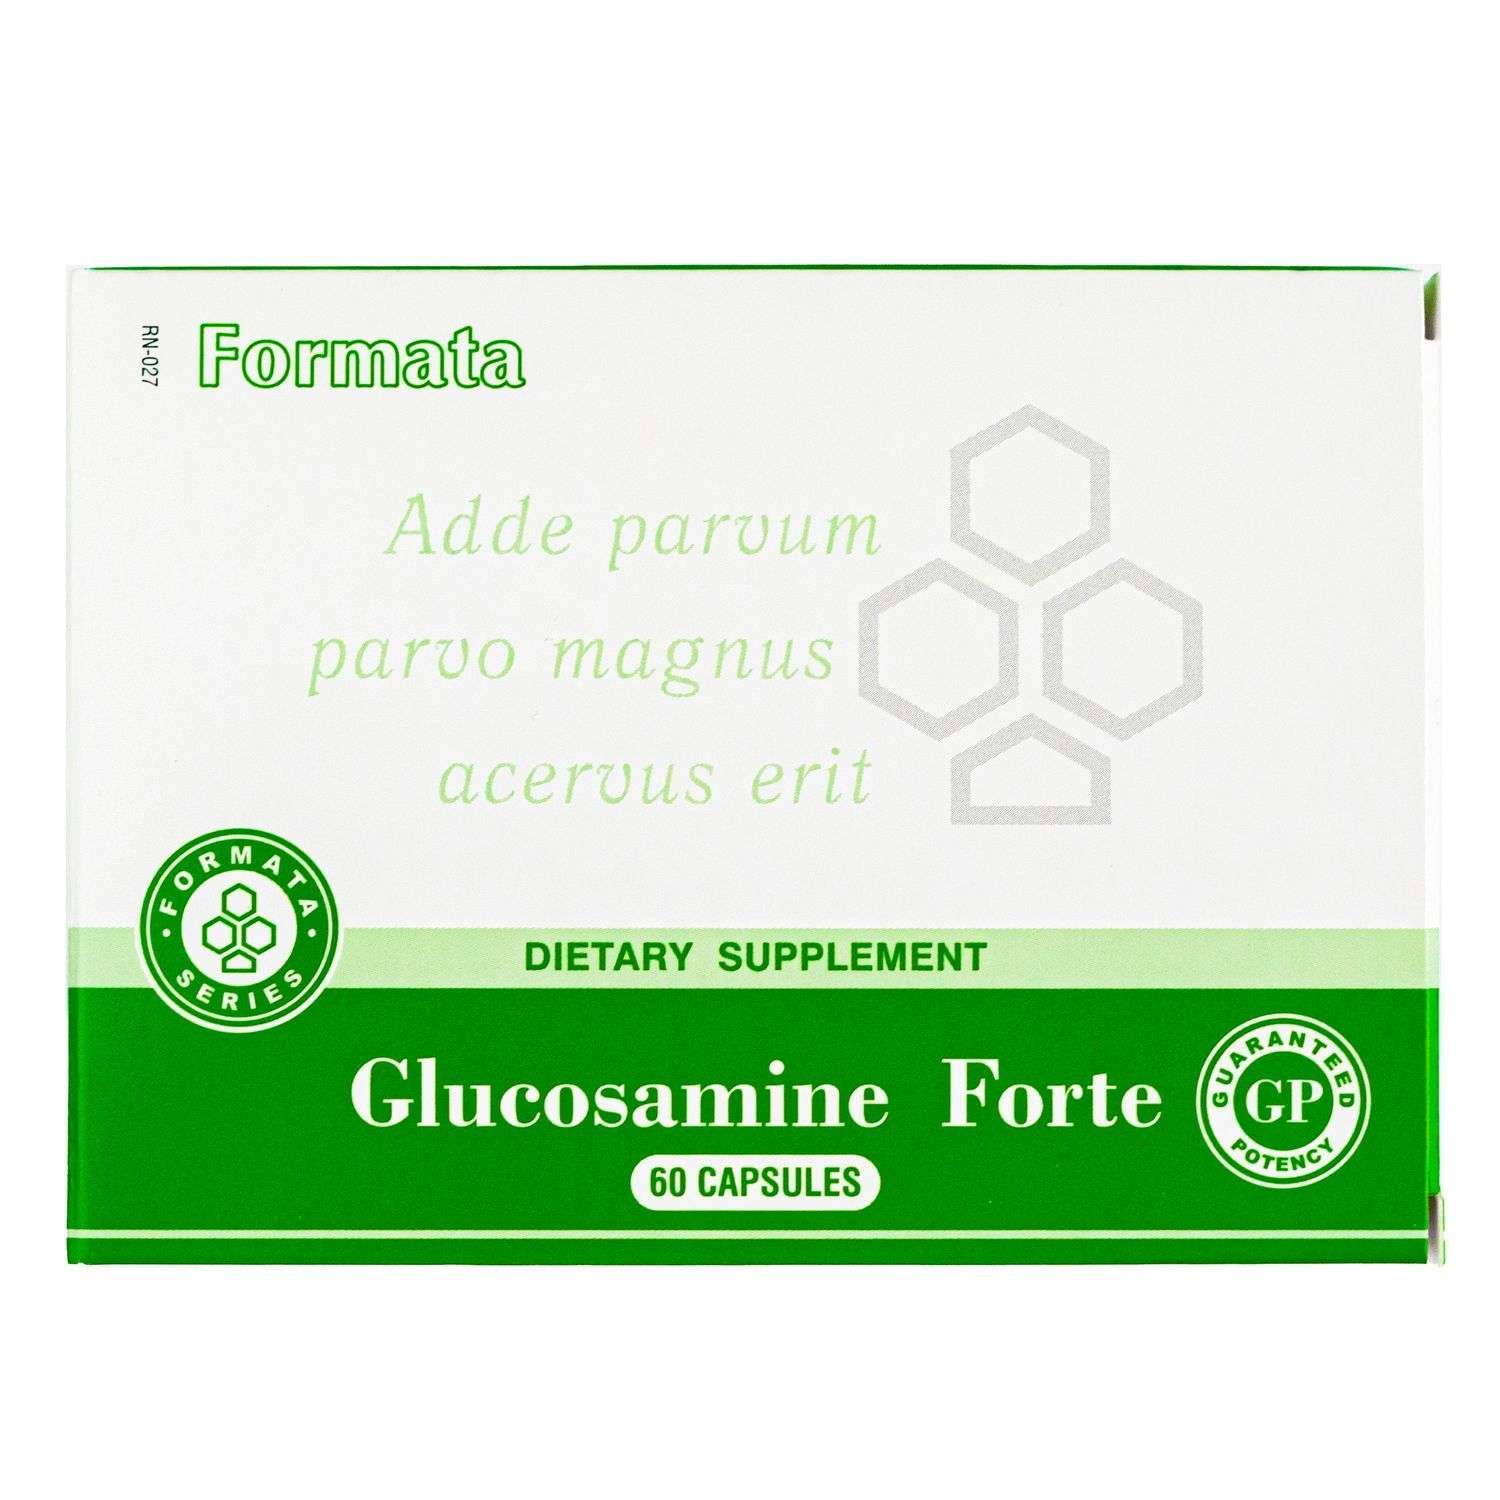 Биологически активная добавка Santegra Glucosamine Forte GP 60капсул - фото 1